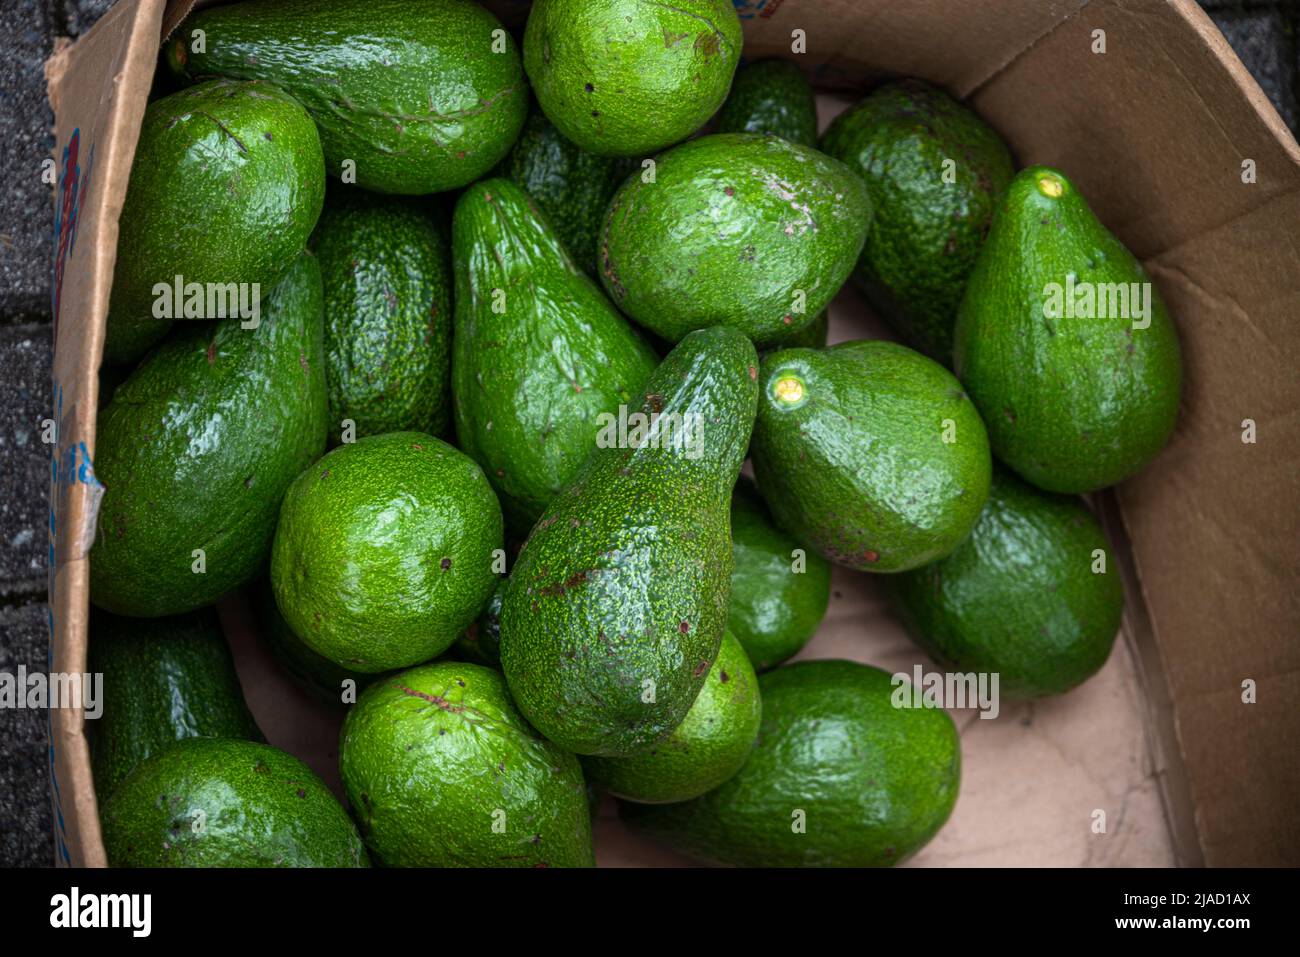 Green Avocados in a box Stock Photo